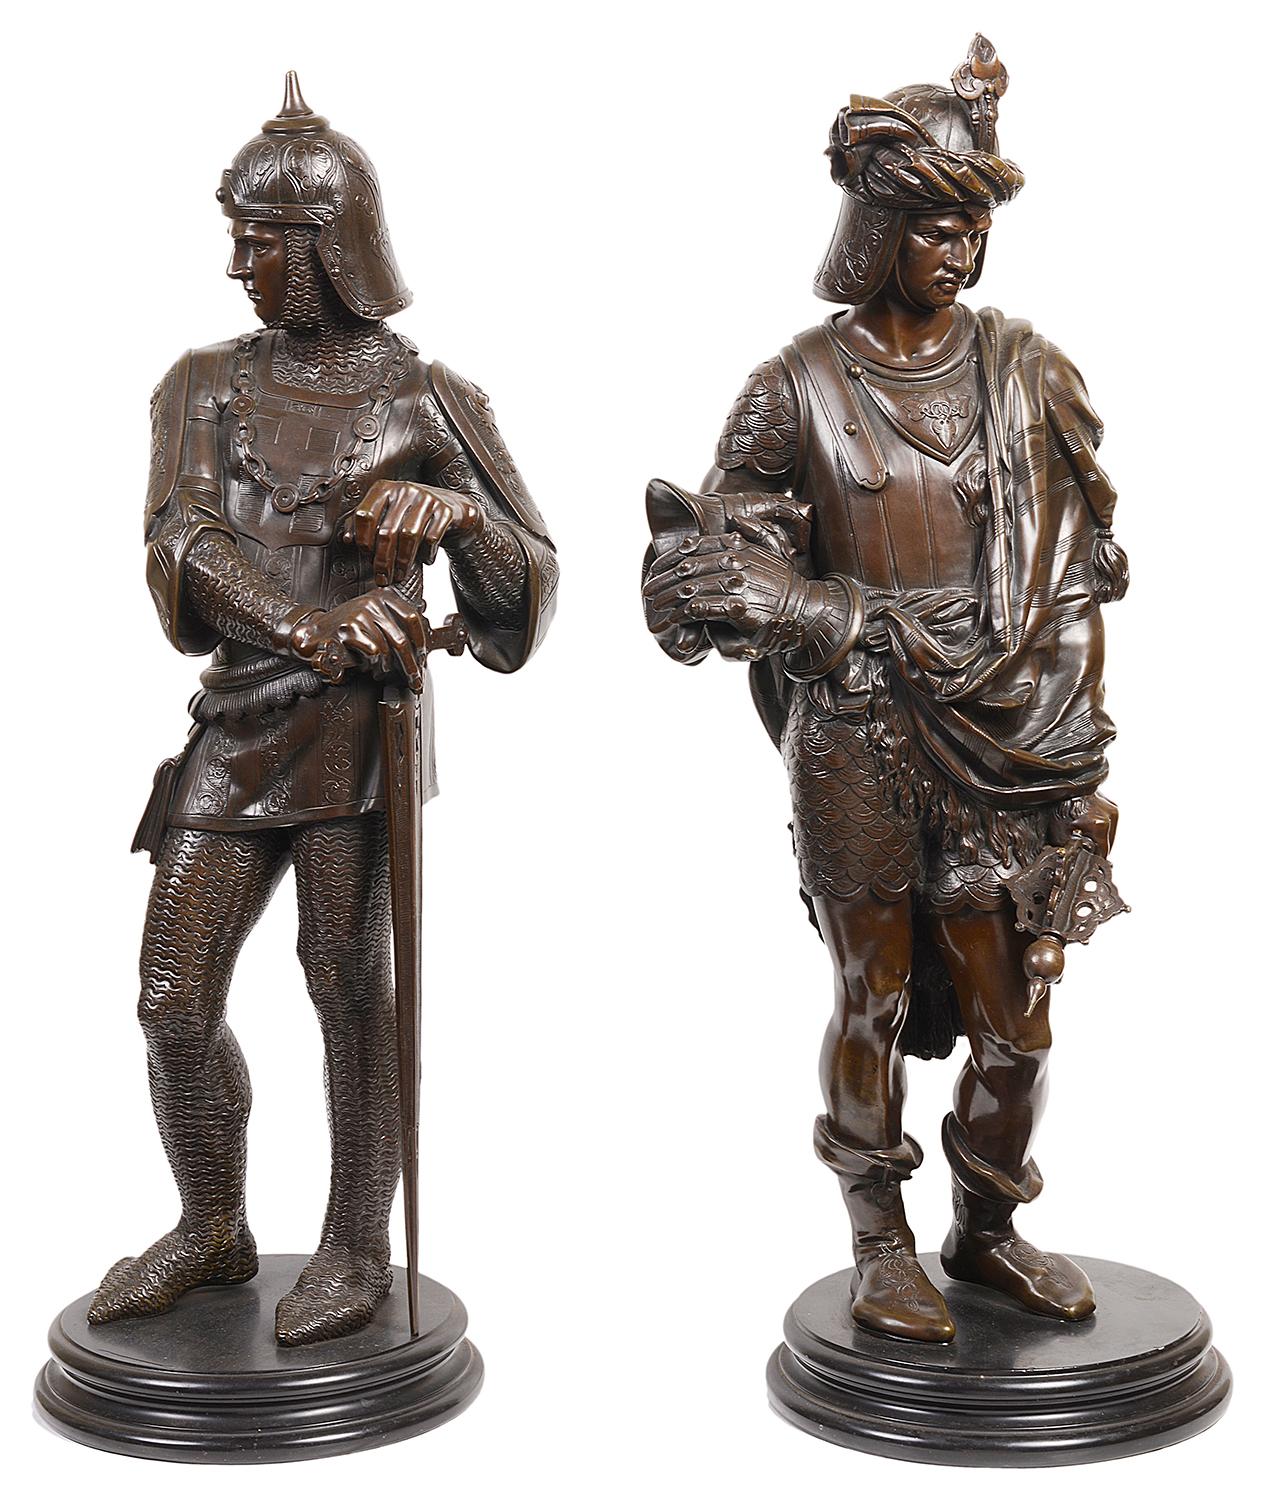 Ein Paar französischer Bronzestatuen aus dem 19. Jahrhundert, die Soldaten in ihren Rüstungen darstellen, in guter Qualität.

48028 BCELZE